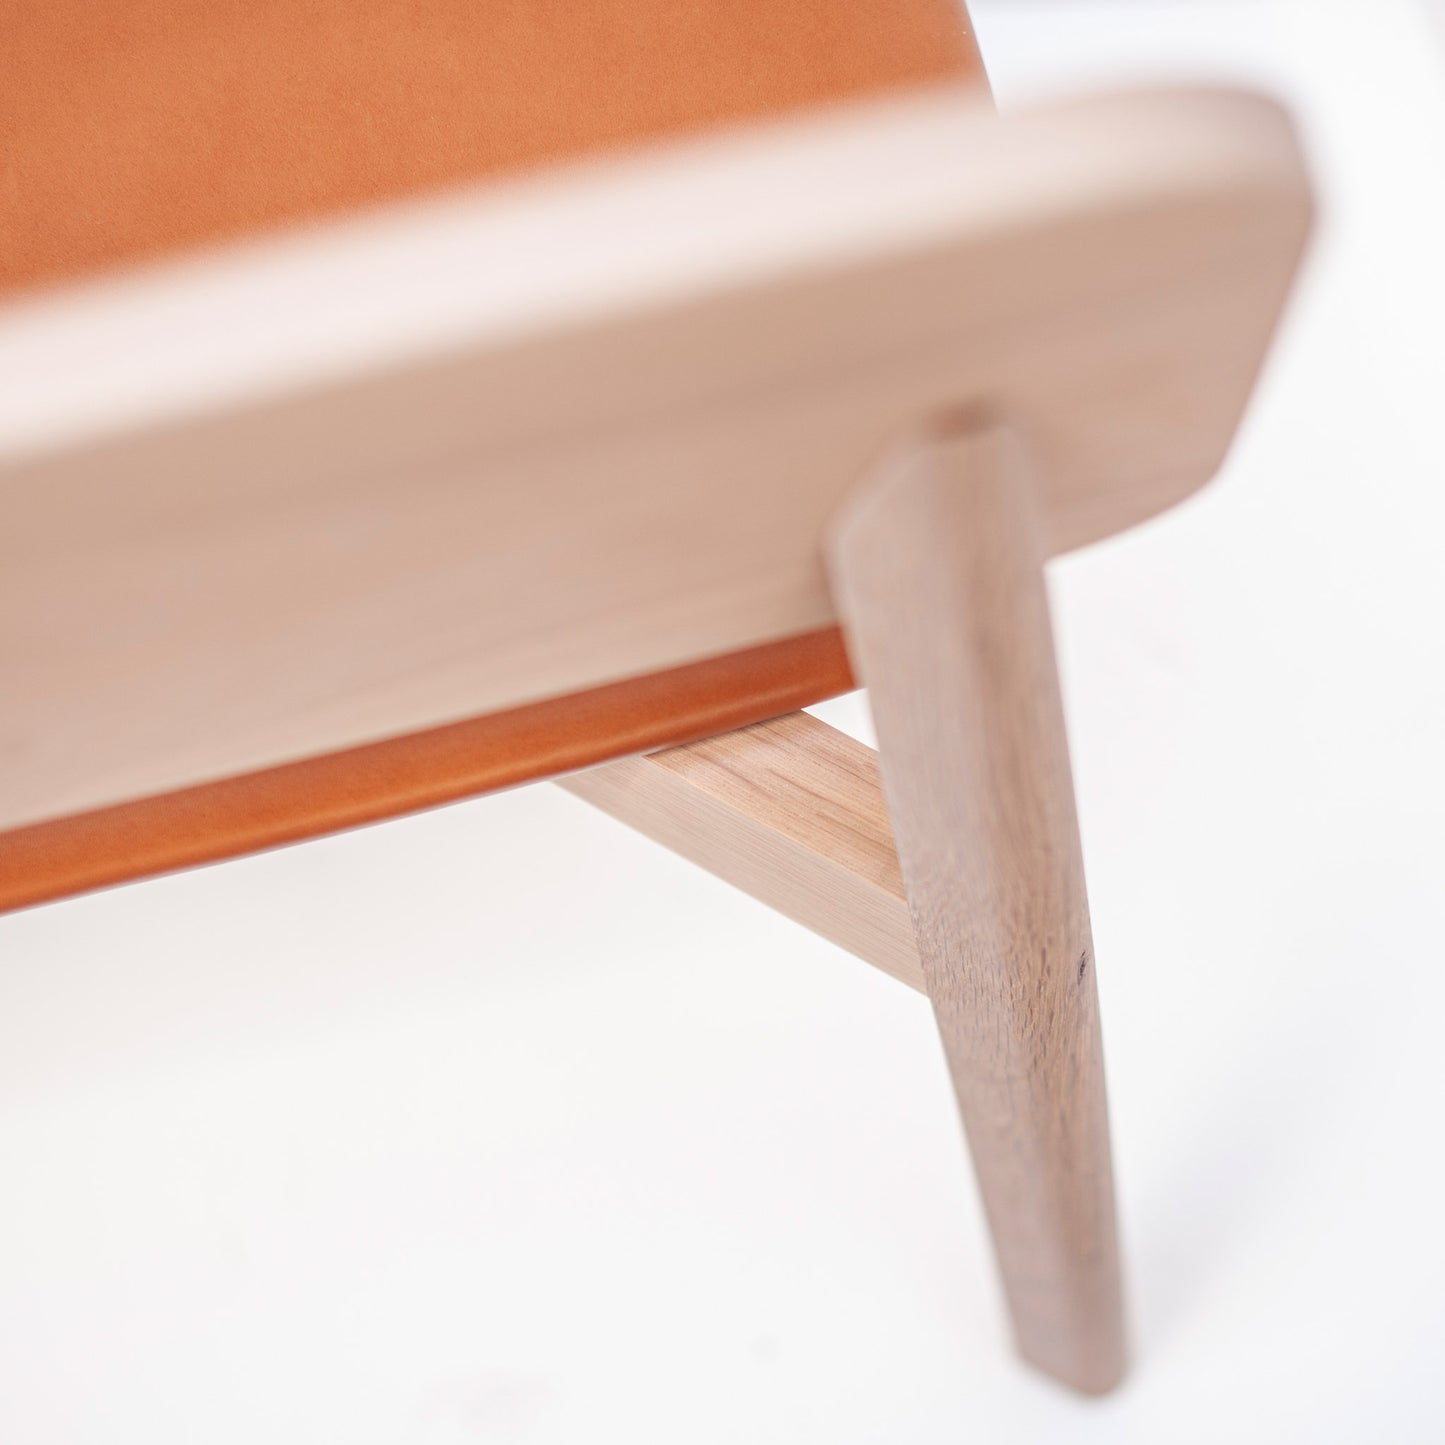 Muhuhu bench | Solid American Oak Whitewash w/ Tan Leather Seat (In Stock)